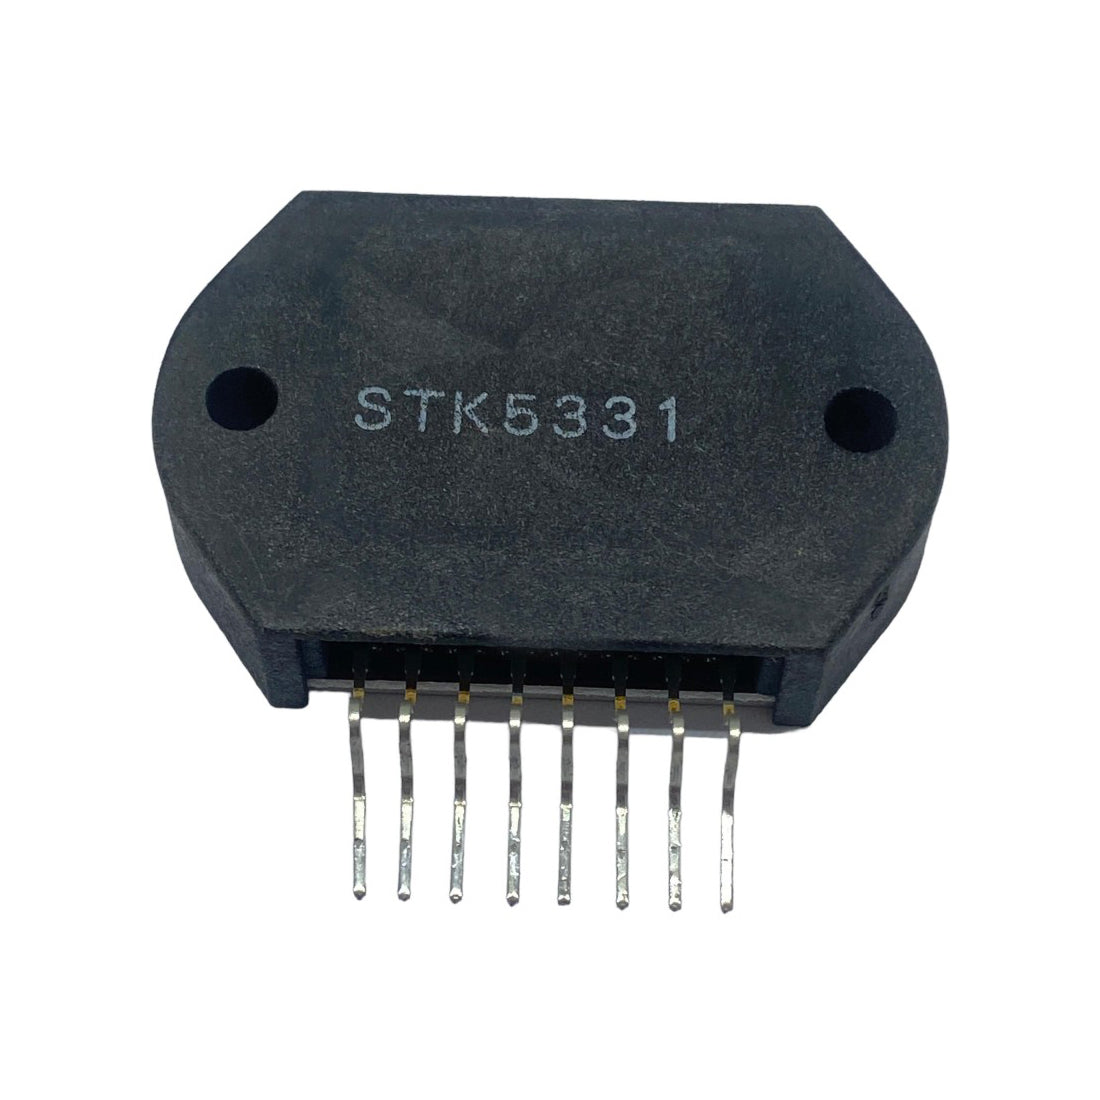 STK5331 Componente elettronico, circuito integrato, transistor, 8 contatti